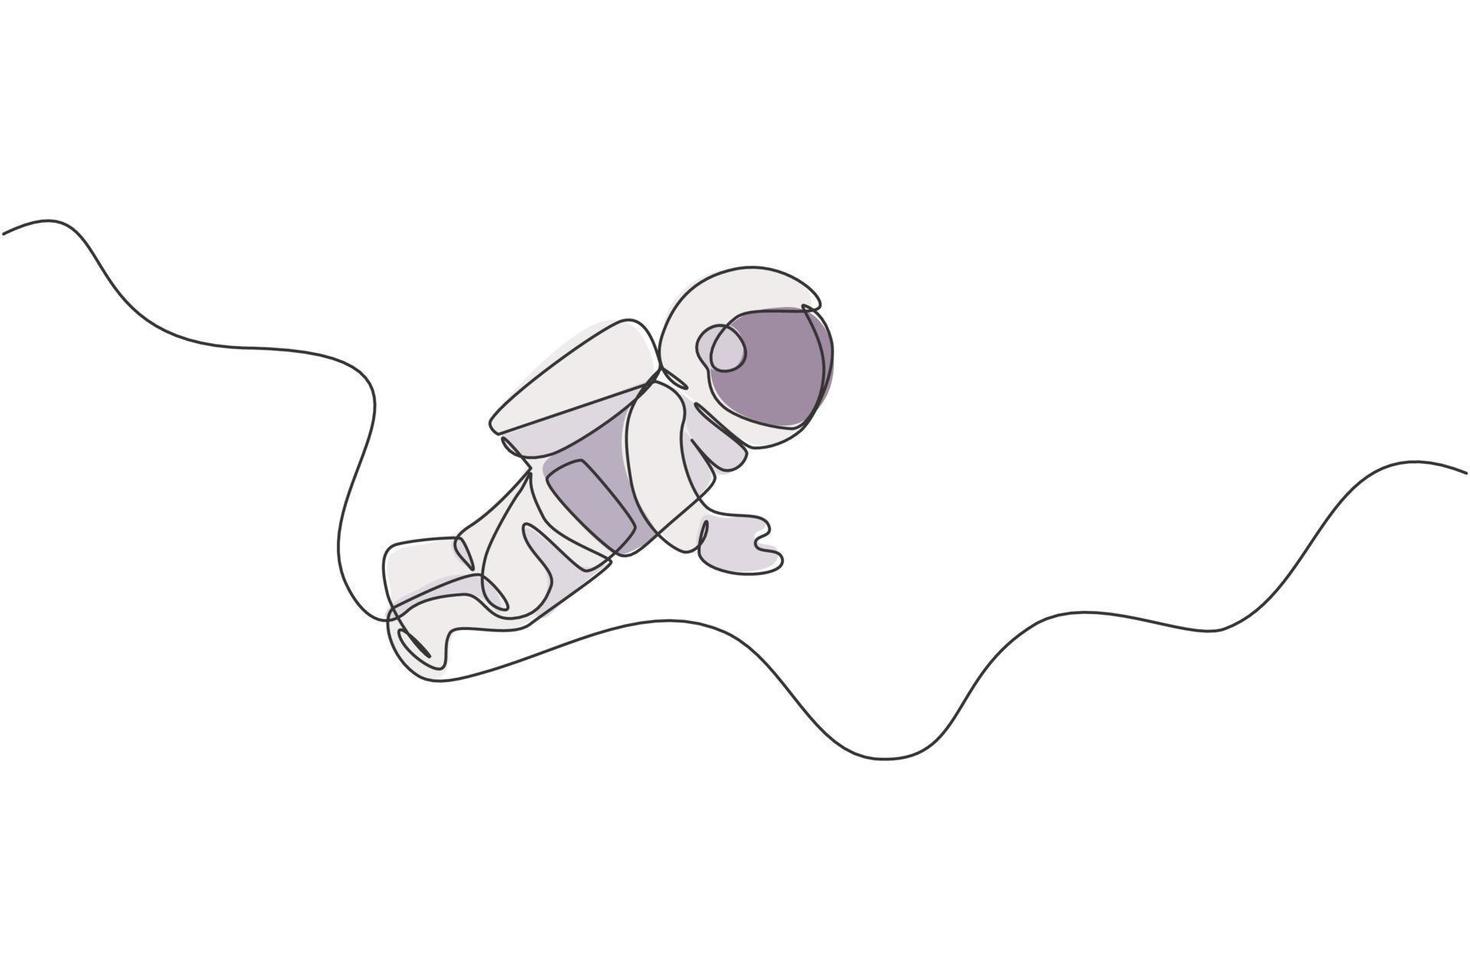 en enda radritning av ung astronaut i rymddräkt som flyger i yttre rymden vektorillustration. rymdman äventyr galaktiska rymden koncept. modern kontinuerlig linje rita design grafik vektor